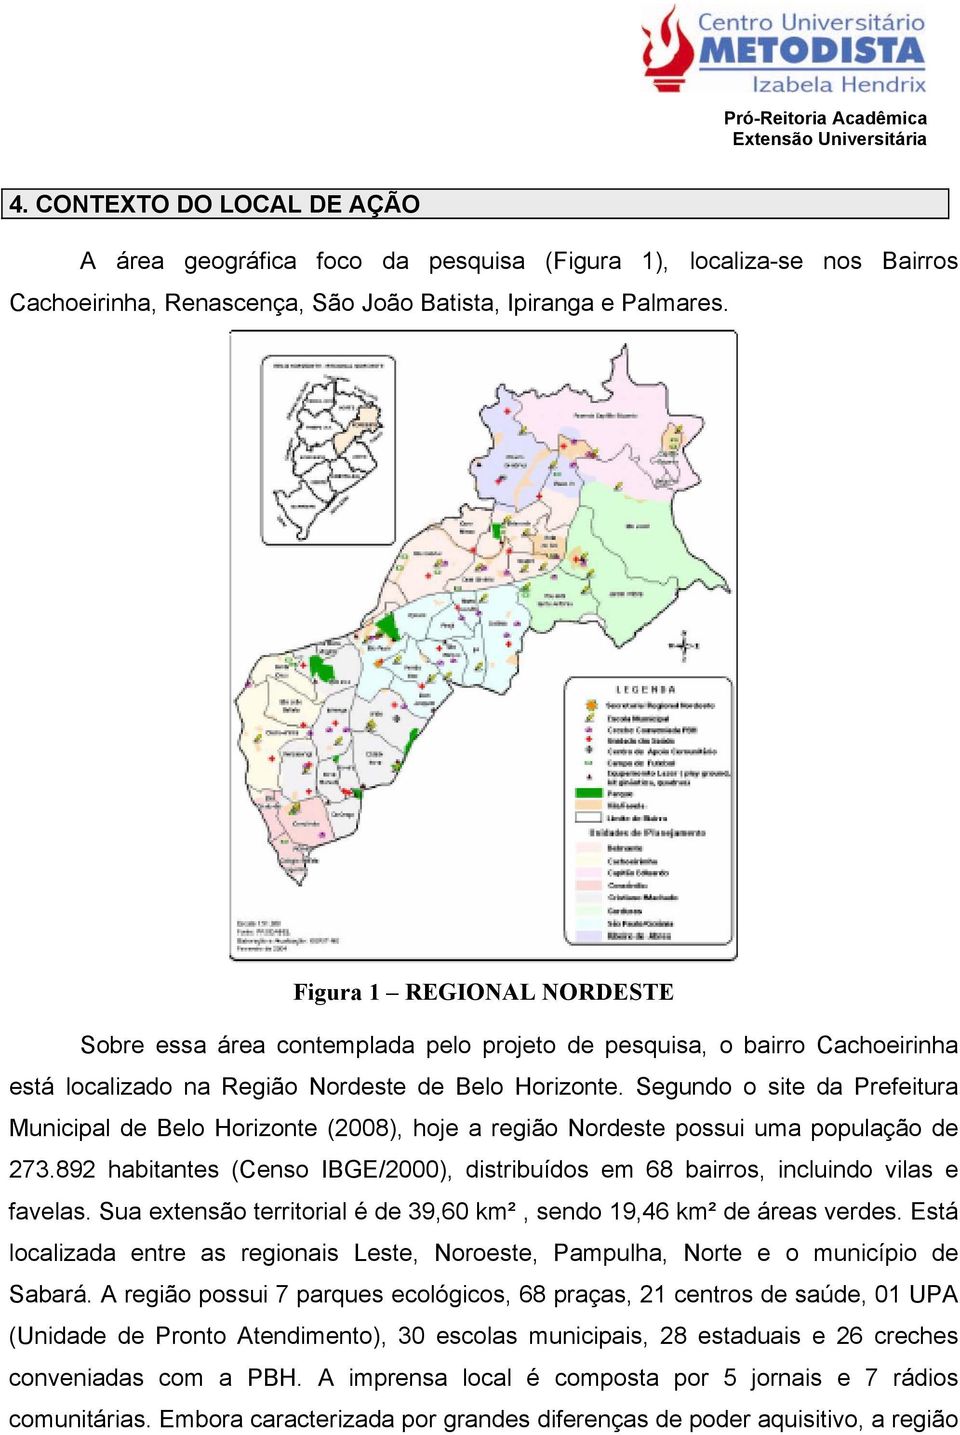 Segundo o site da Prefeitura Municipal de Belo Horizonte (2008), hoje a região Nordeste possui uma população de 273.